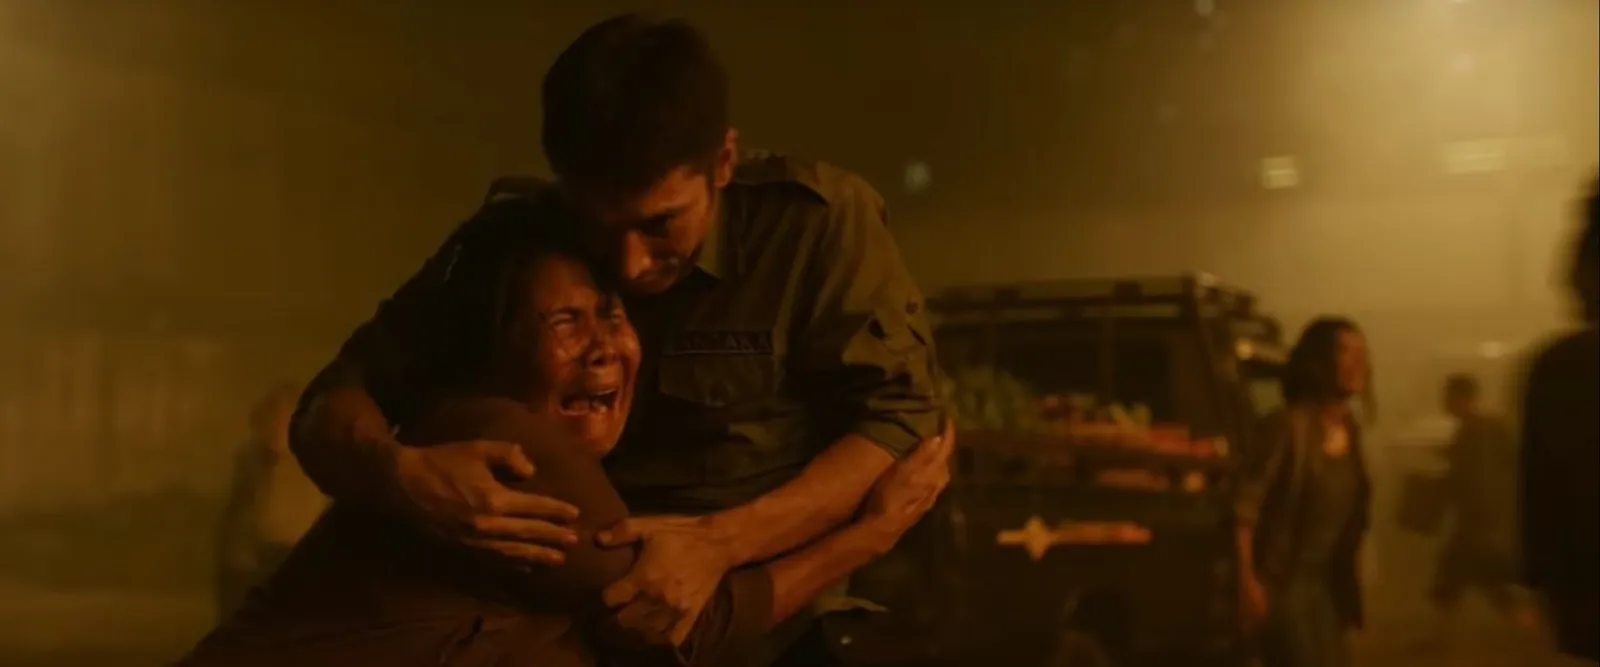 Review Film: Gundala, Pembuka Jagat Sinema yang Cukup Memuaskan